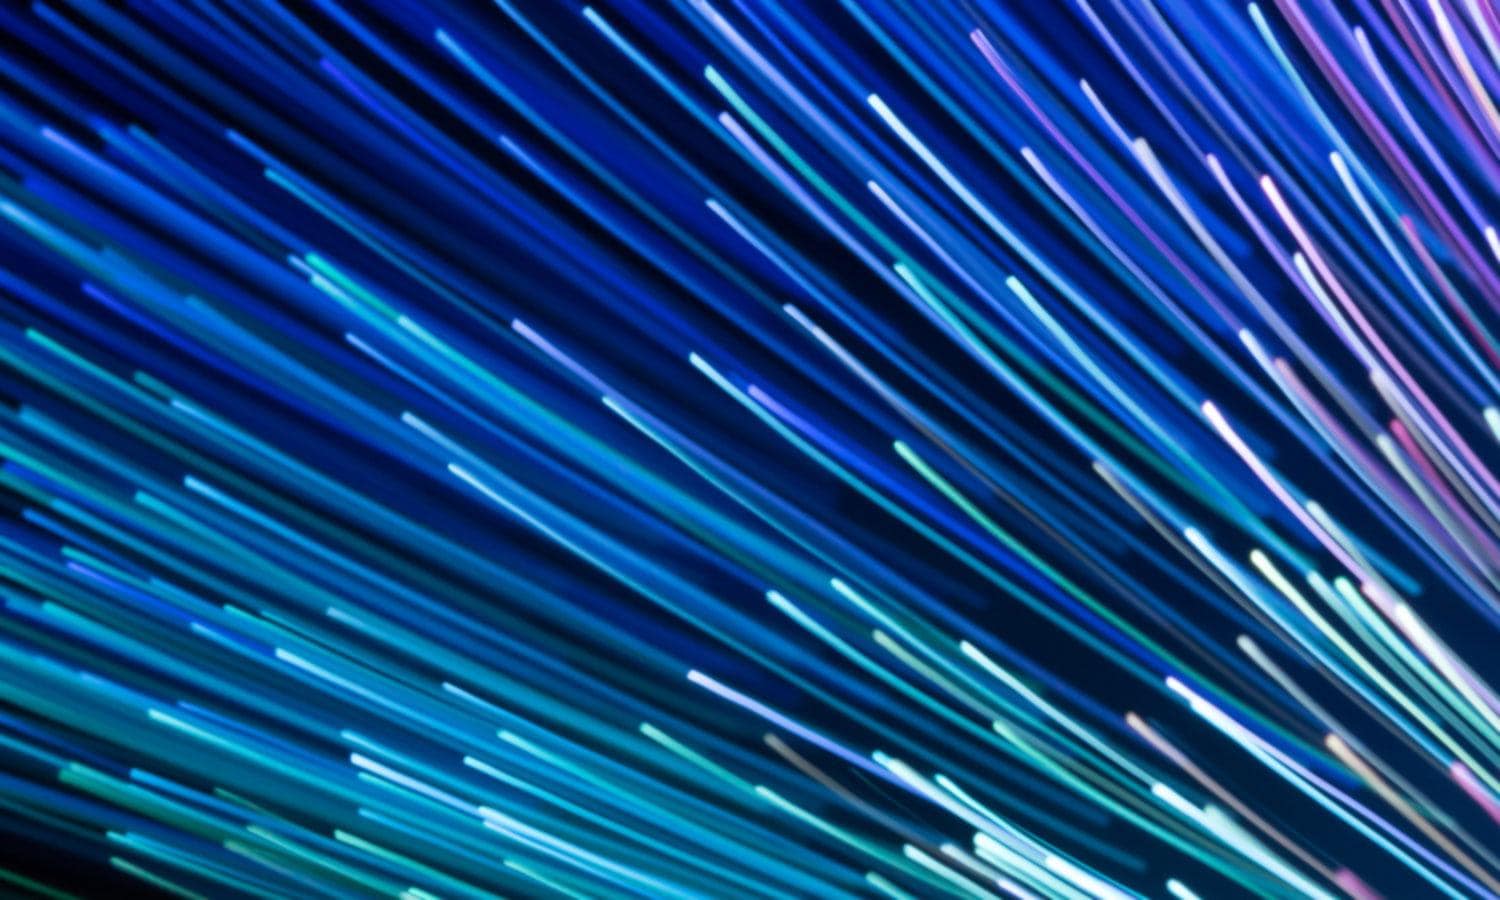 fiber optic lights on blue background